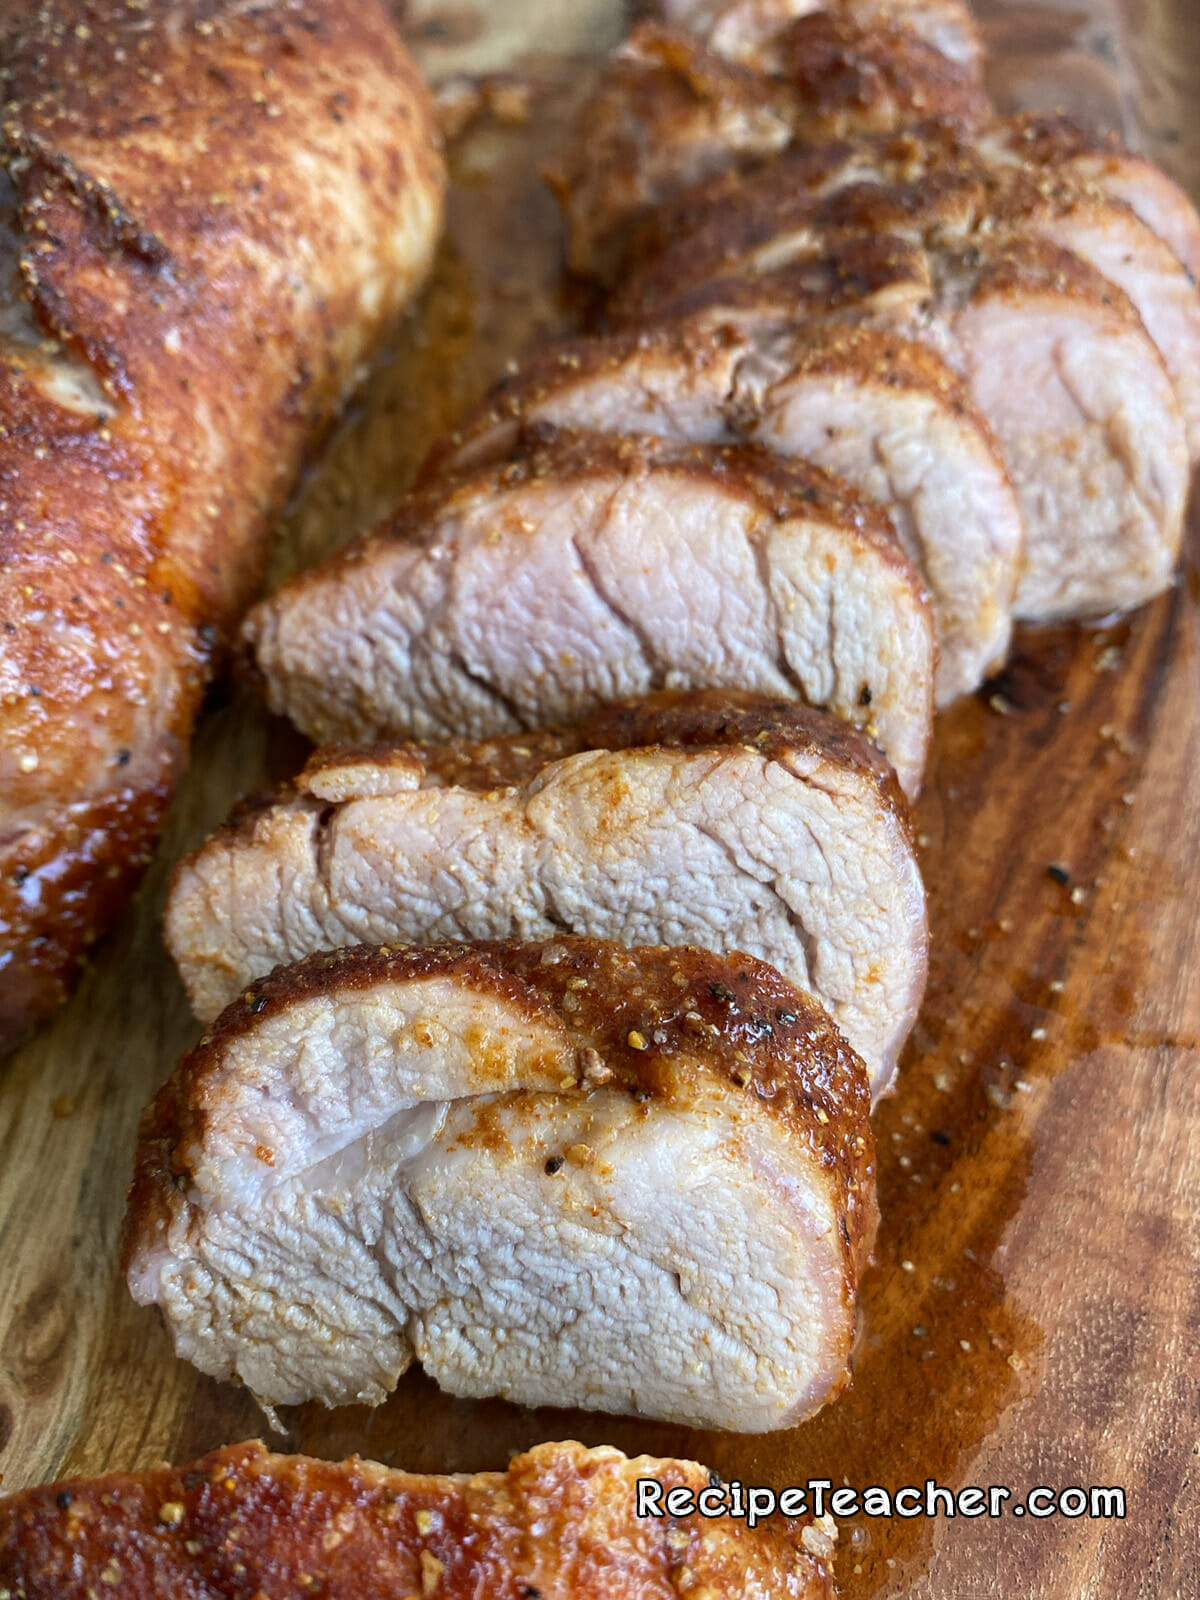 Recipe for oven roasted pork tenderloin